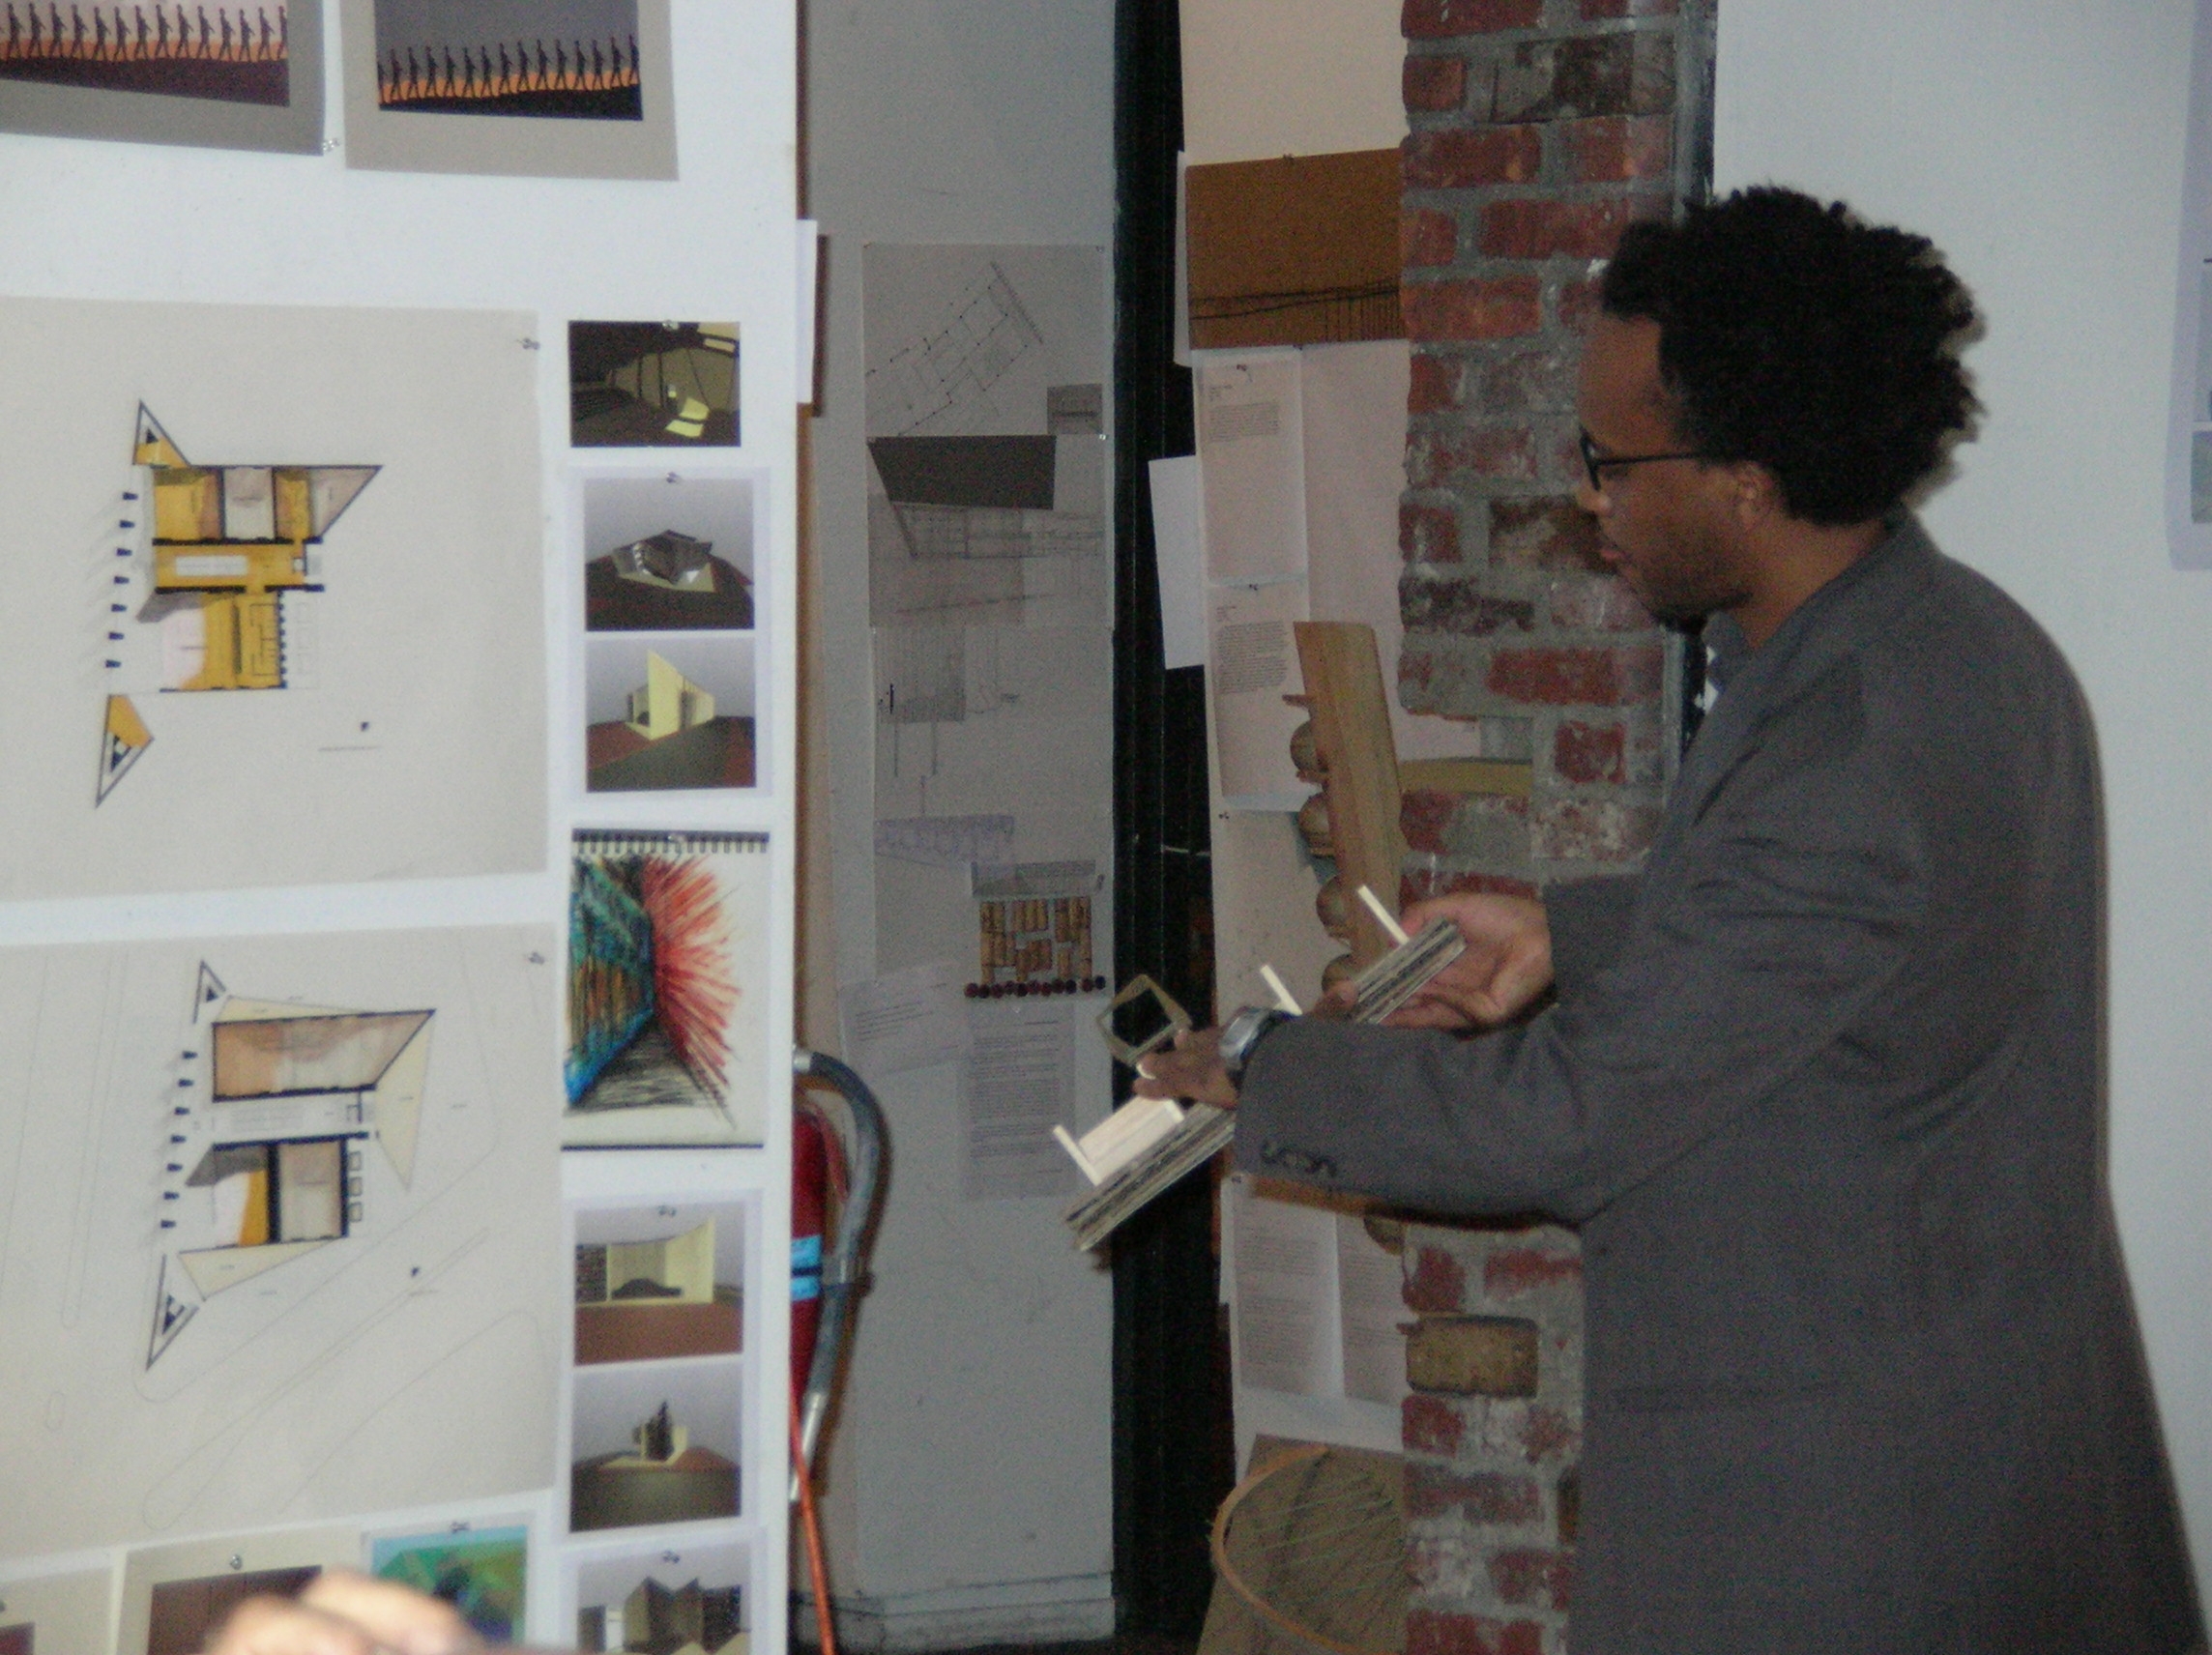 Amare presents his designs